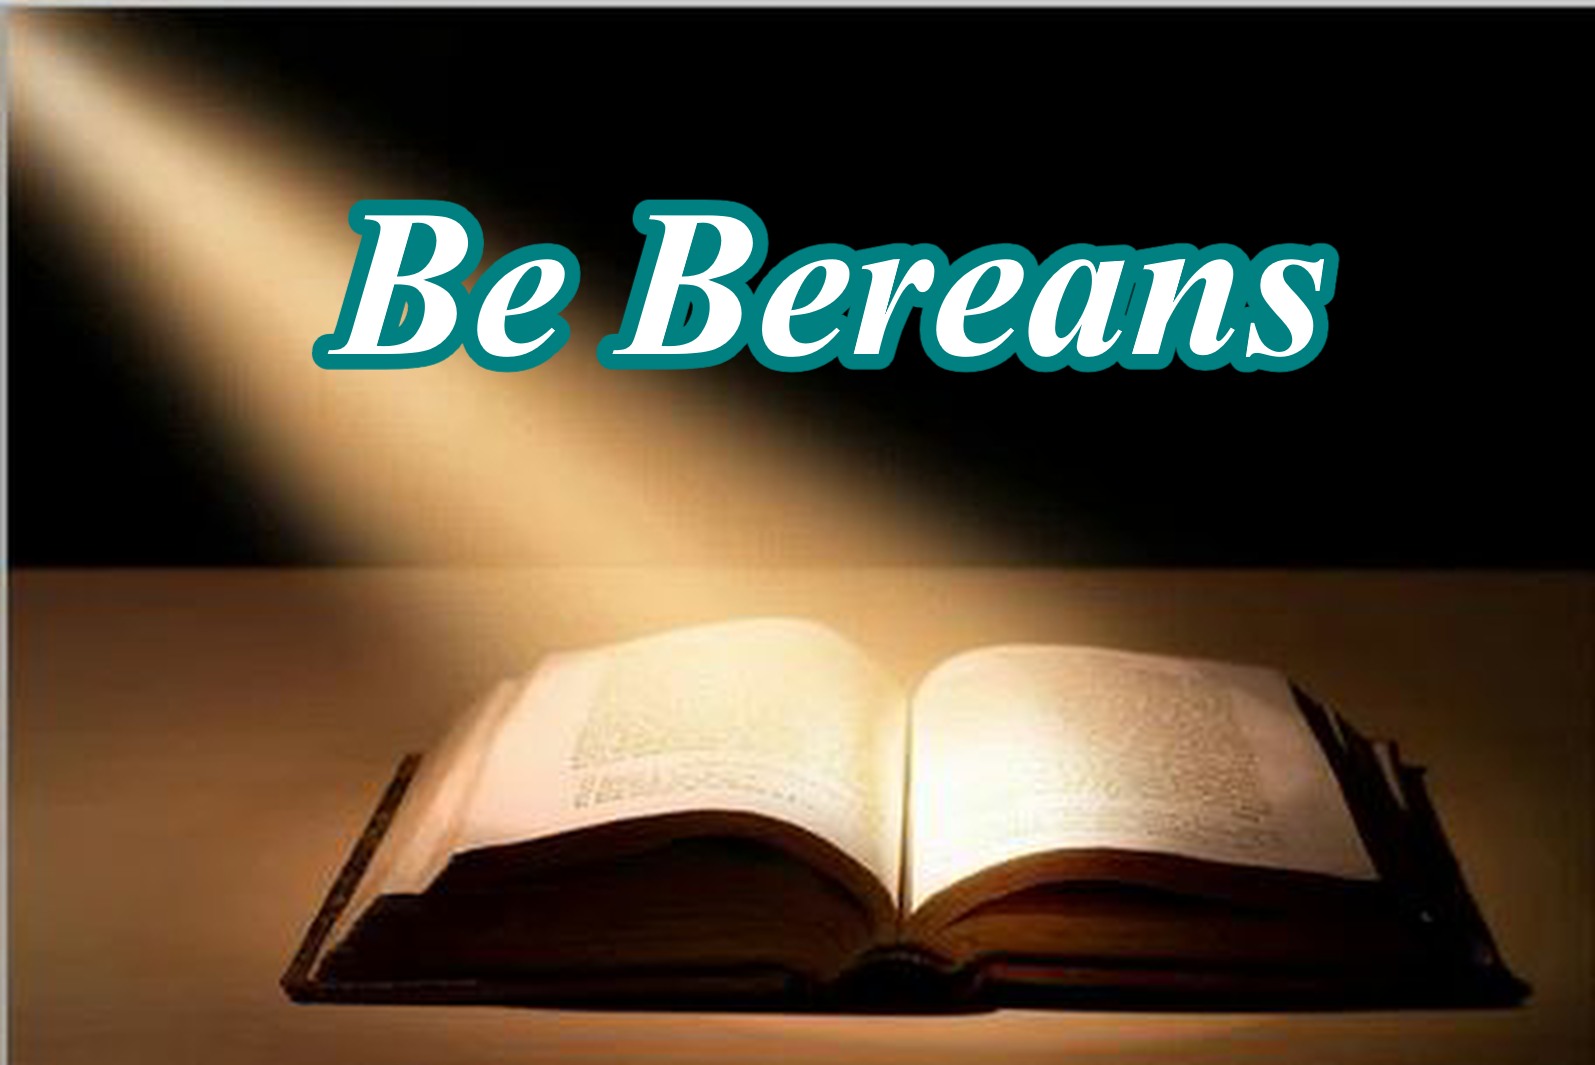 Bereans